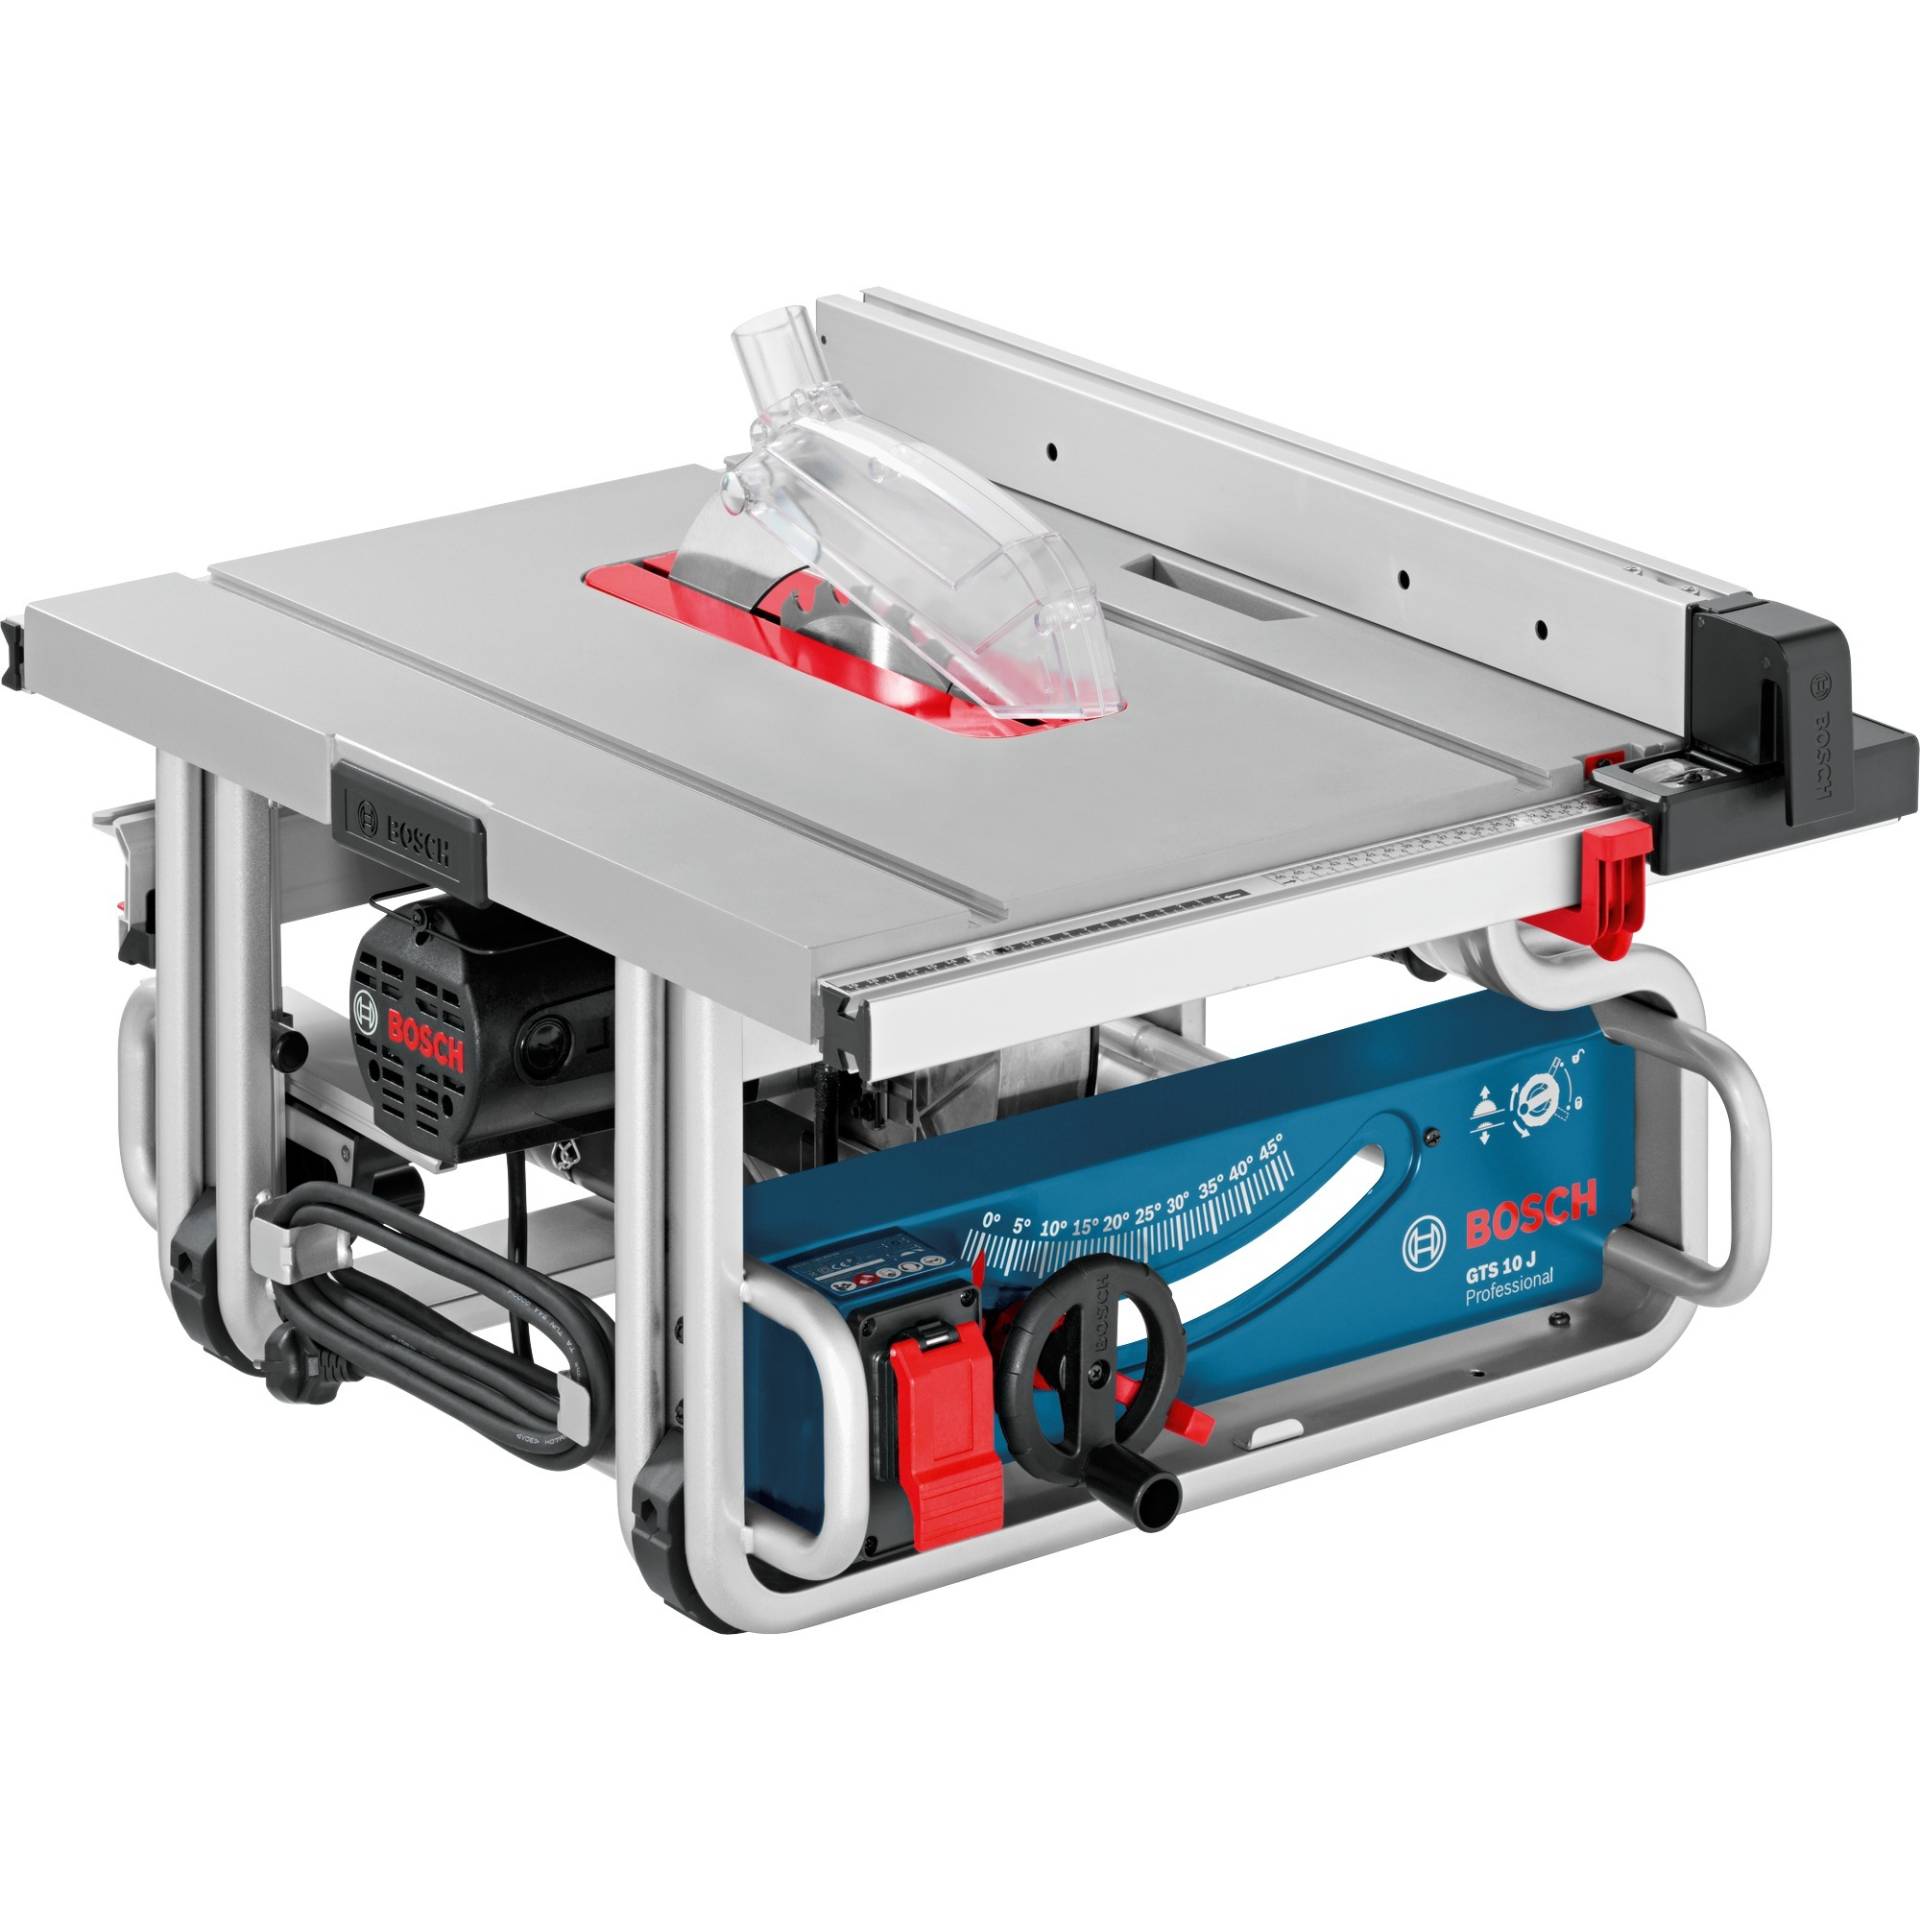 Tischkreissäge GTS 10 J Professional von Bosch